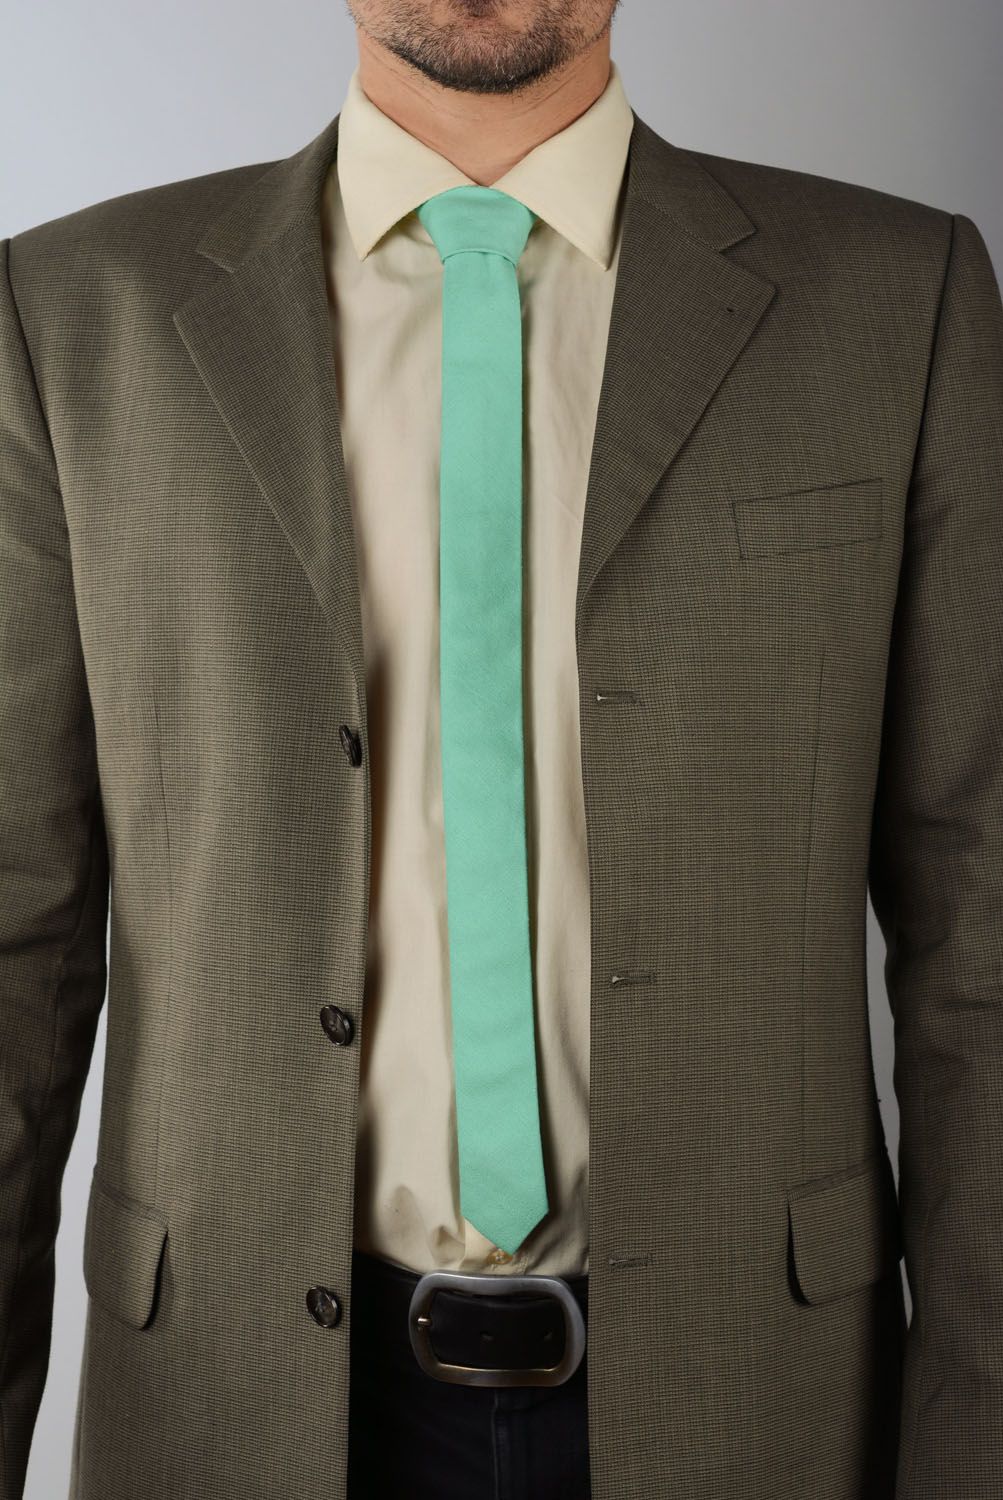 Cravate menthe en lin faite main photo 1